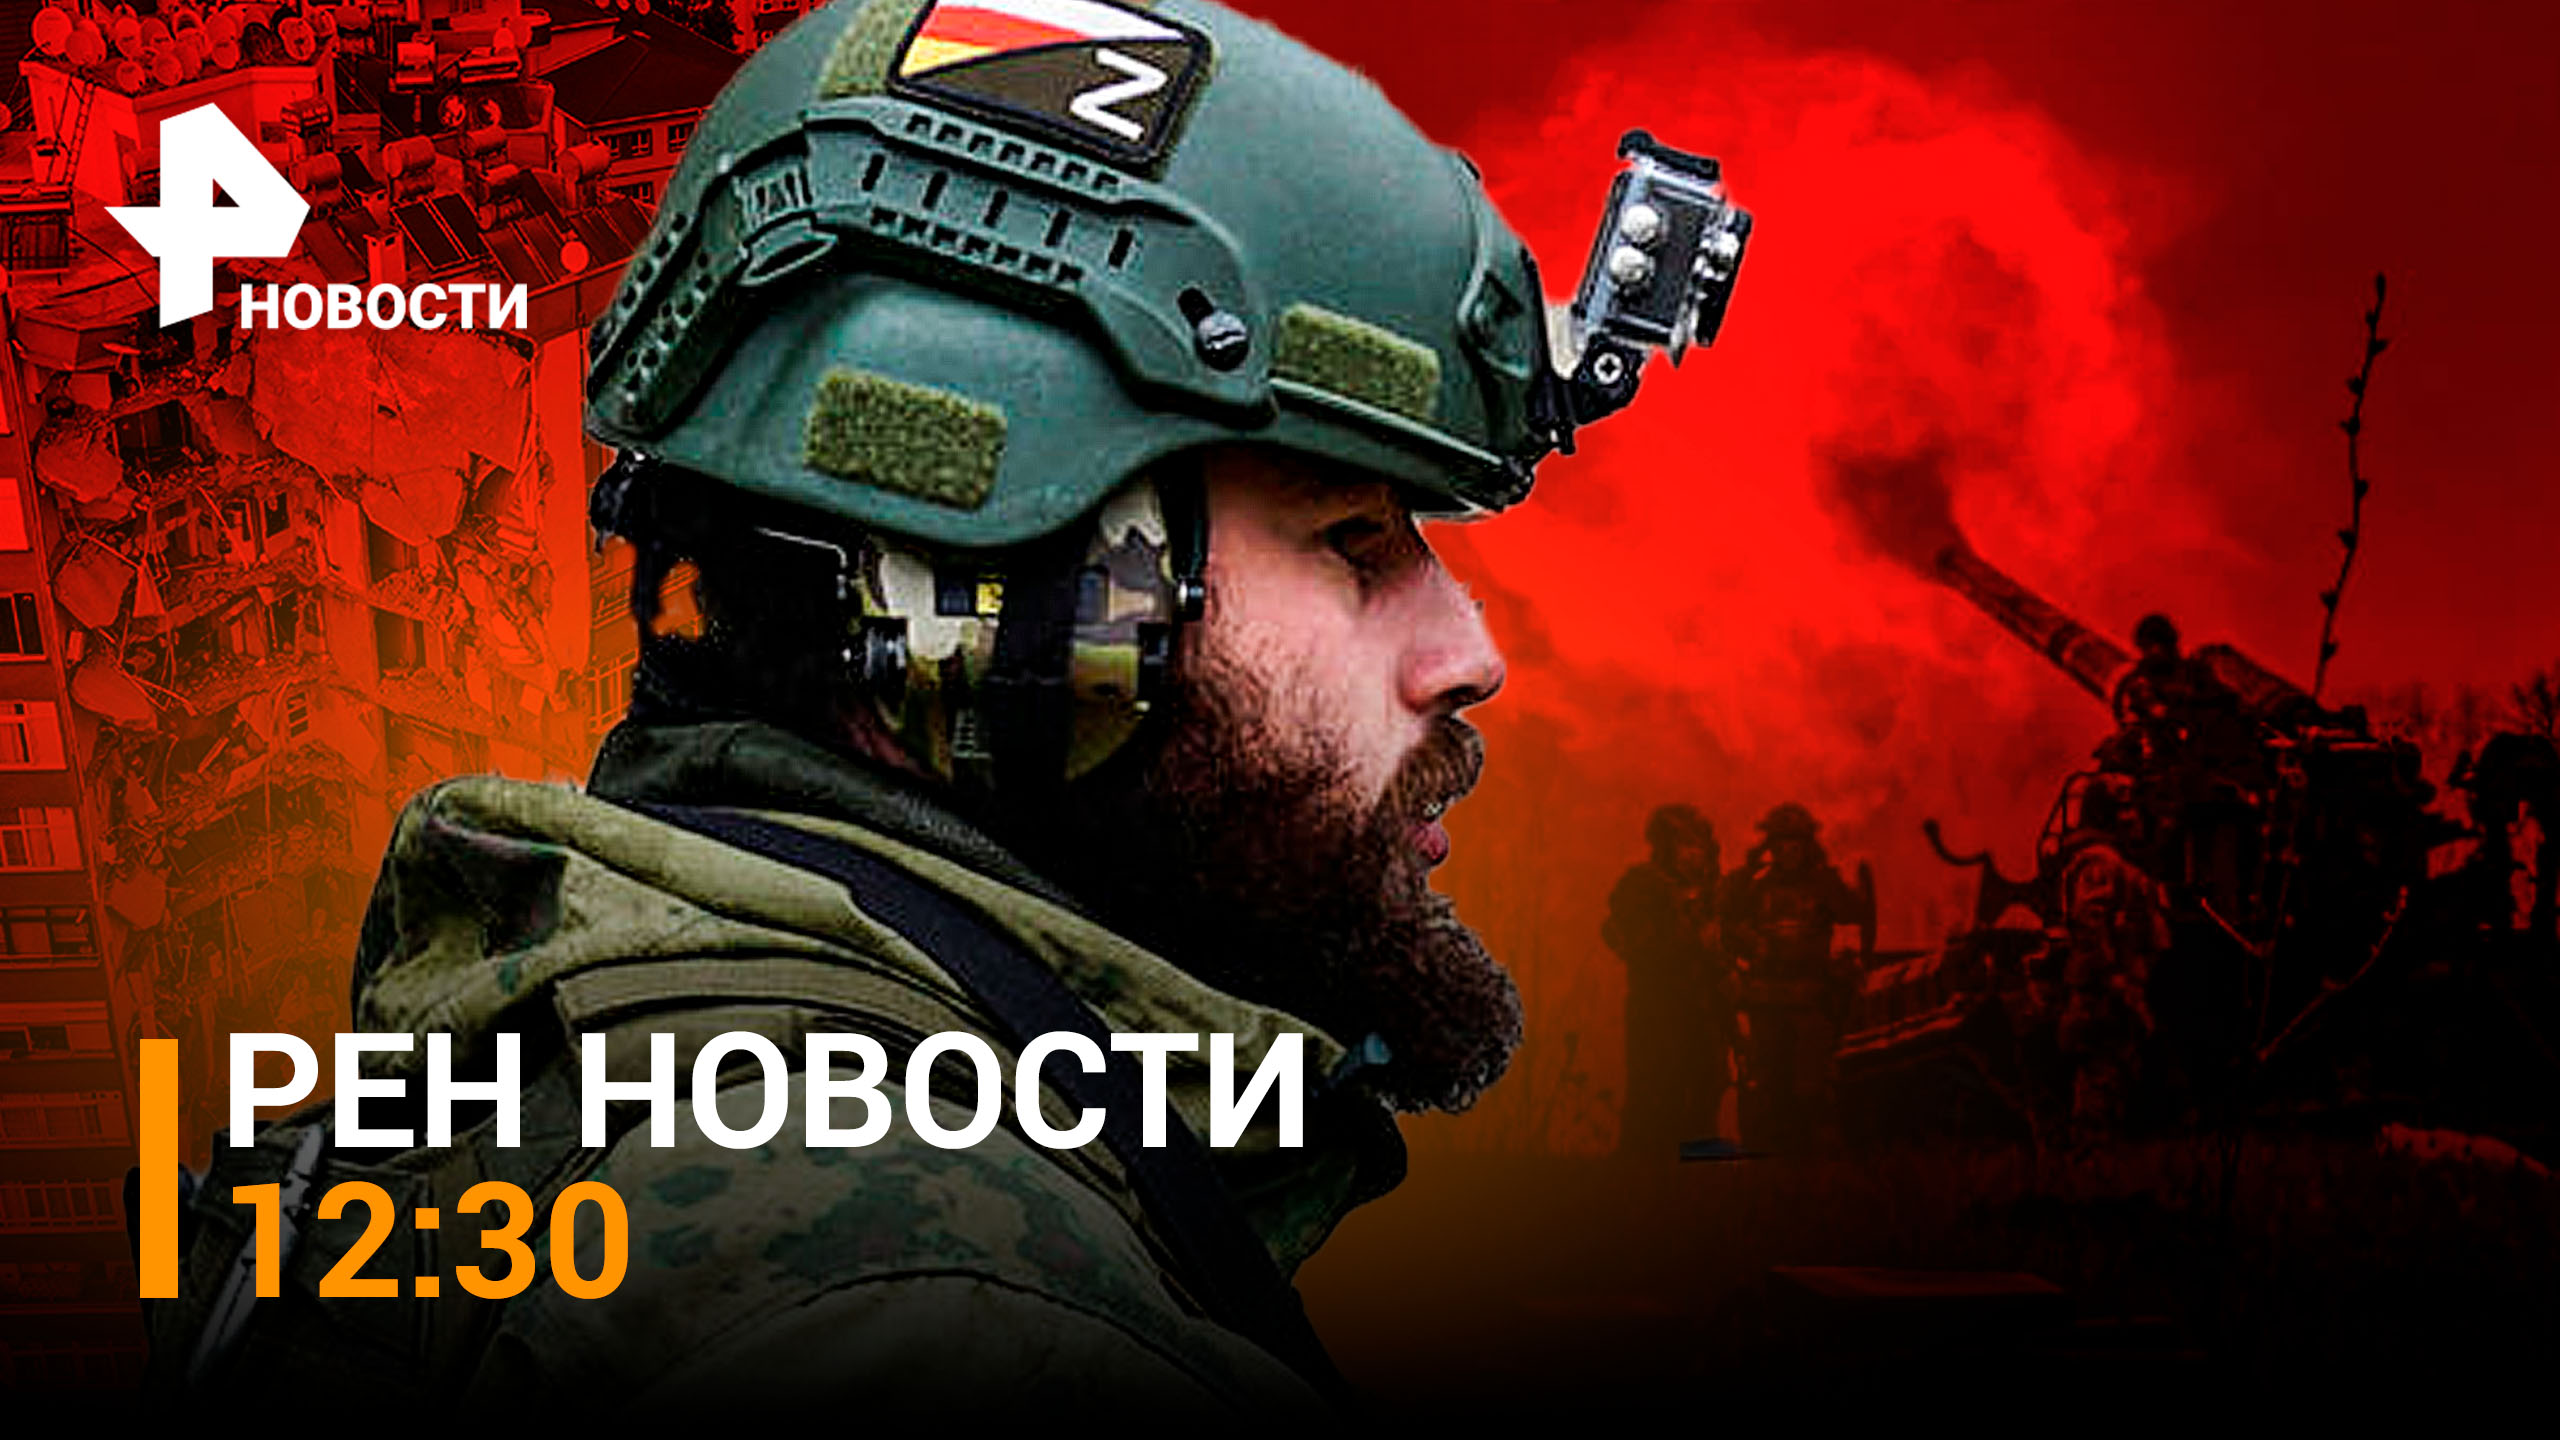 Как российские военные ведут боевые действия в районе Спорного / РЕН НОВОСТИ 12:30